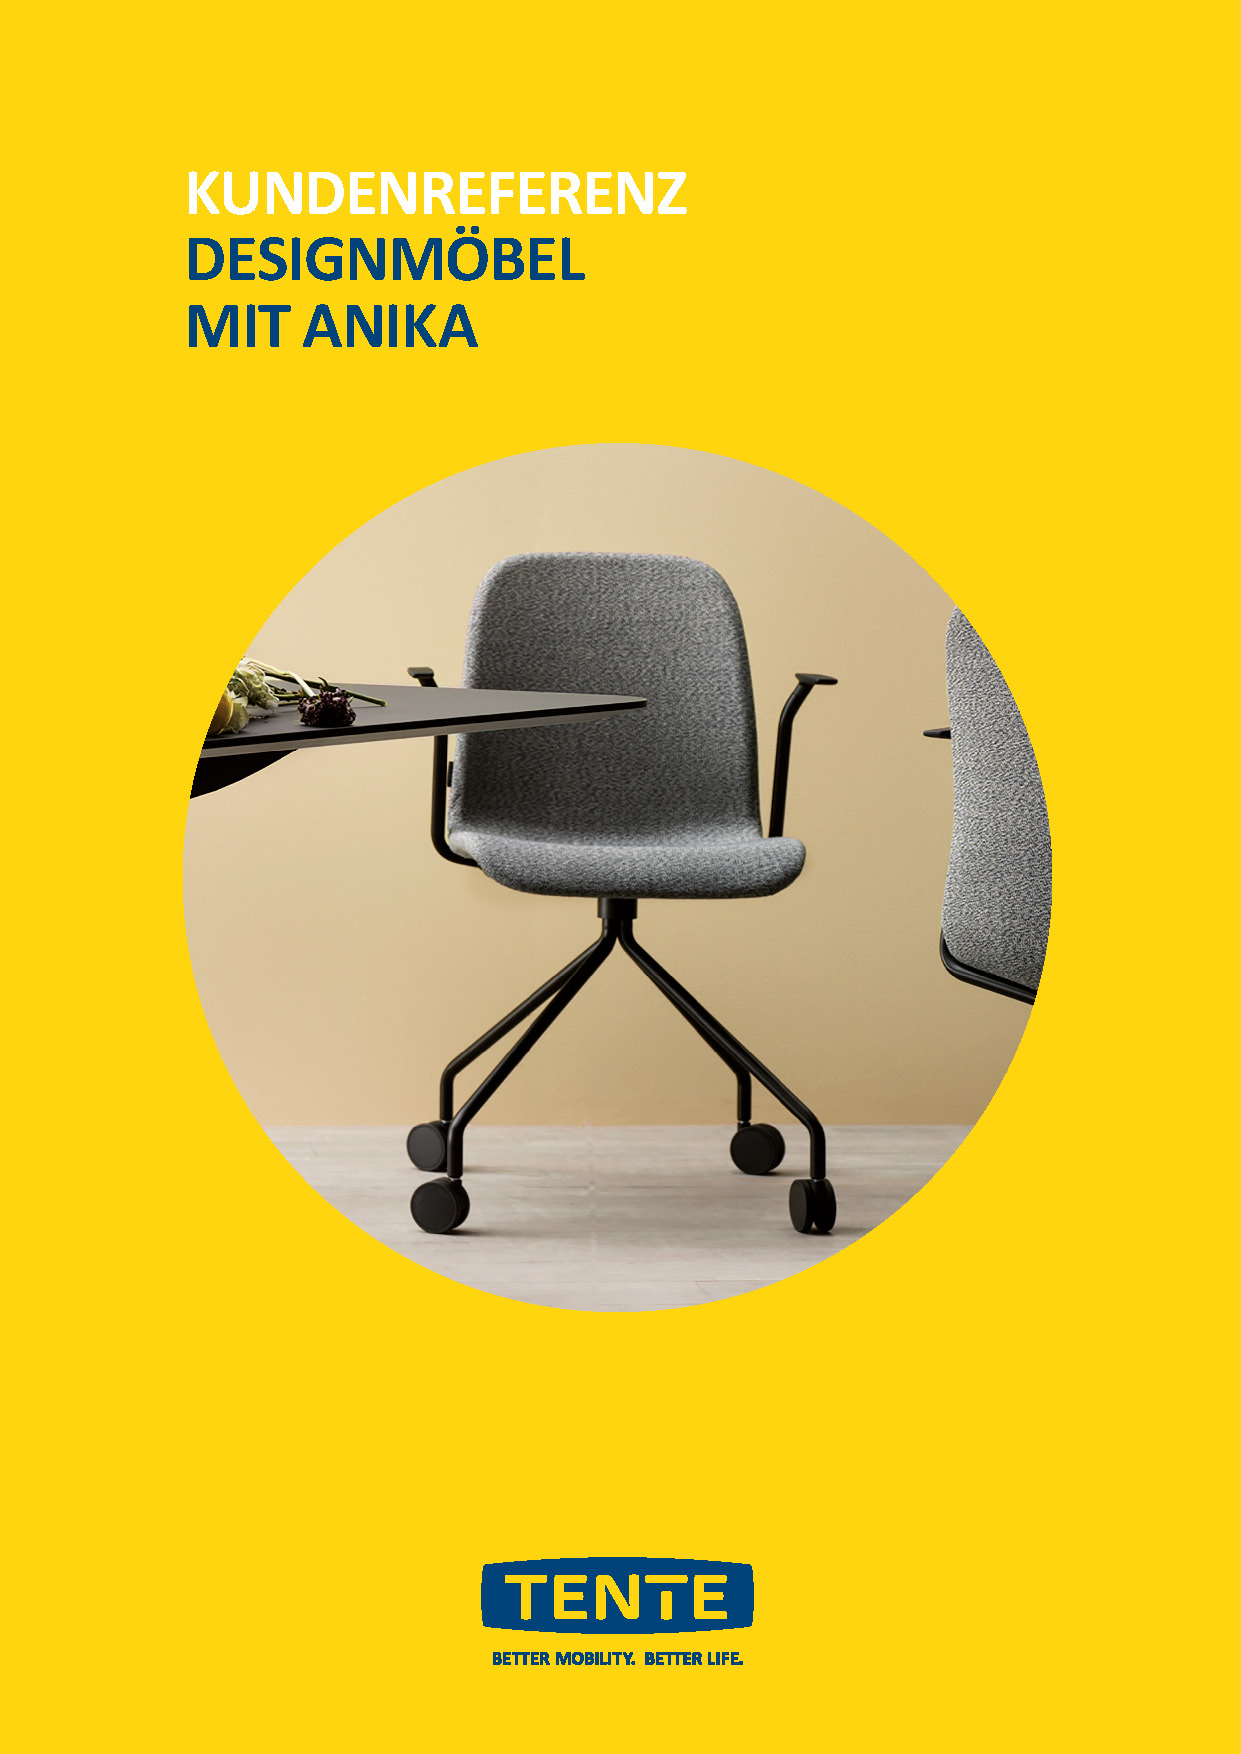 Design furniture with Anika